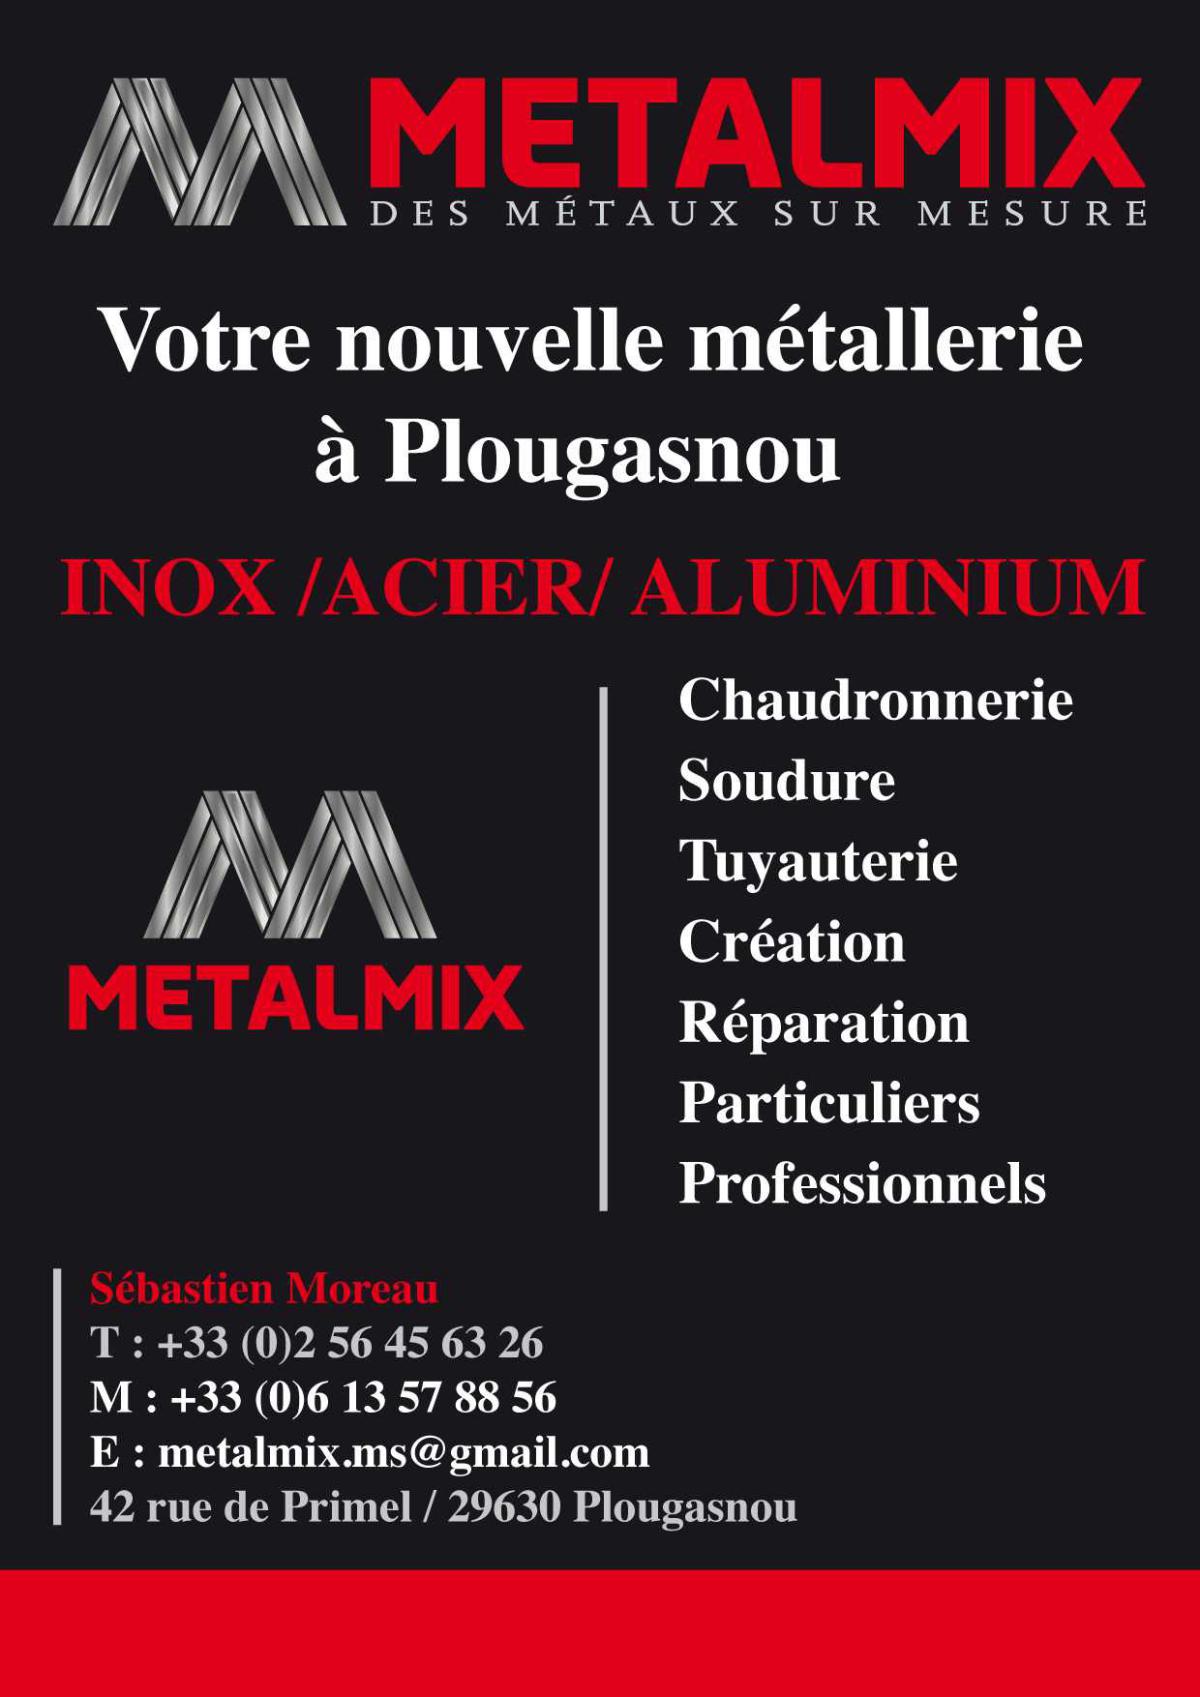 Metalmix Plougasnou Morlaix metallerie Chadronnerie Soudure Inox Acier Alu